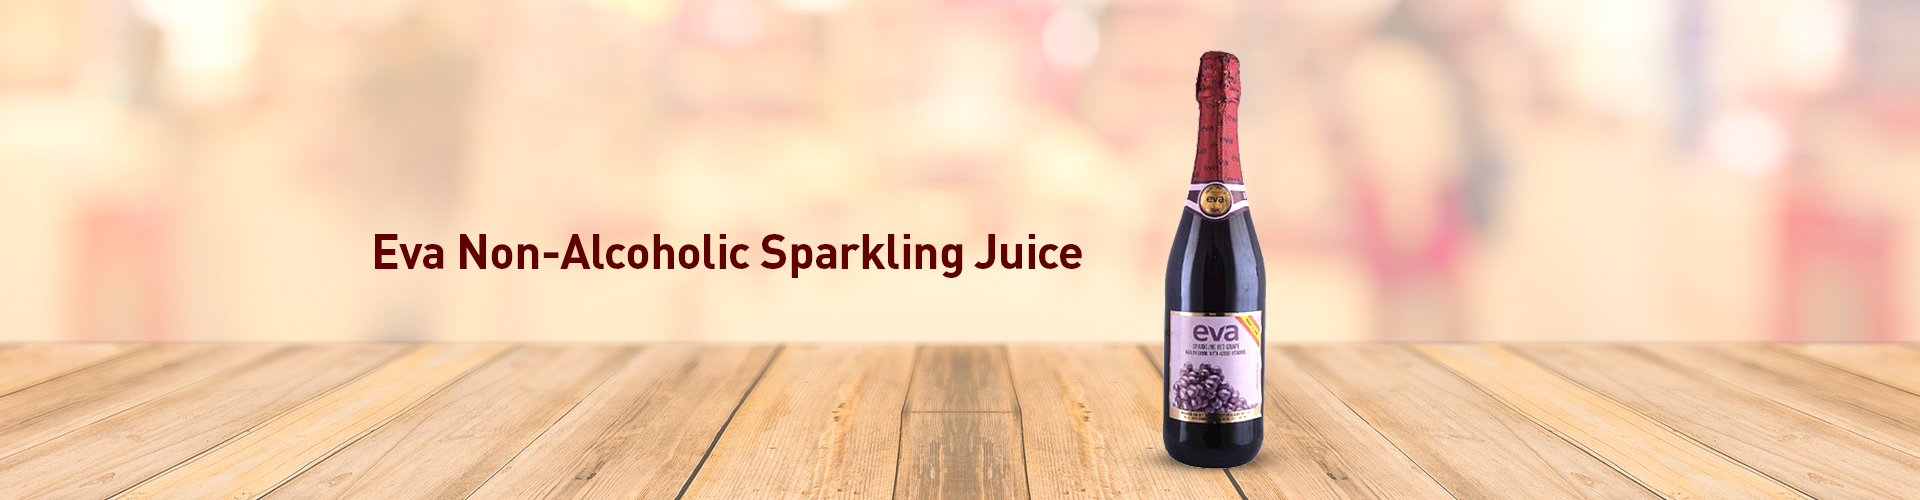 Eva Non-Alcoholic Sparkling Wine